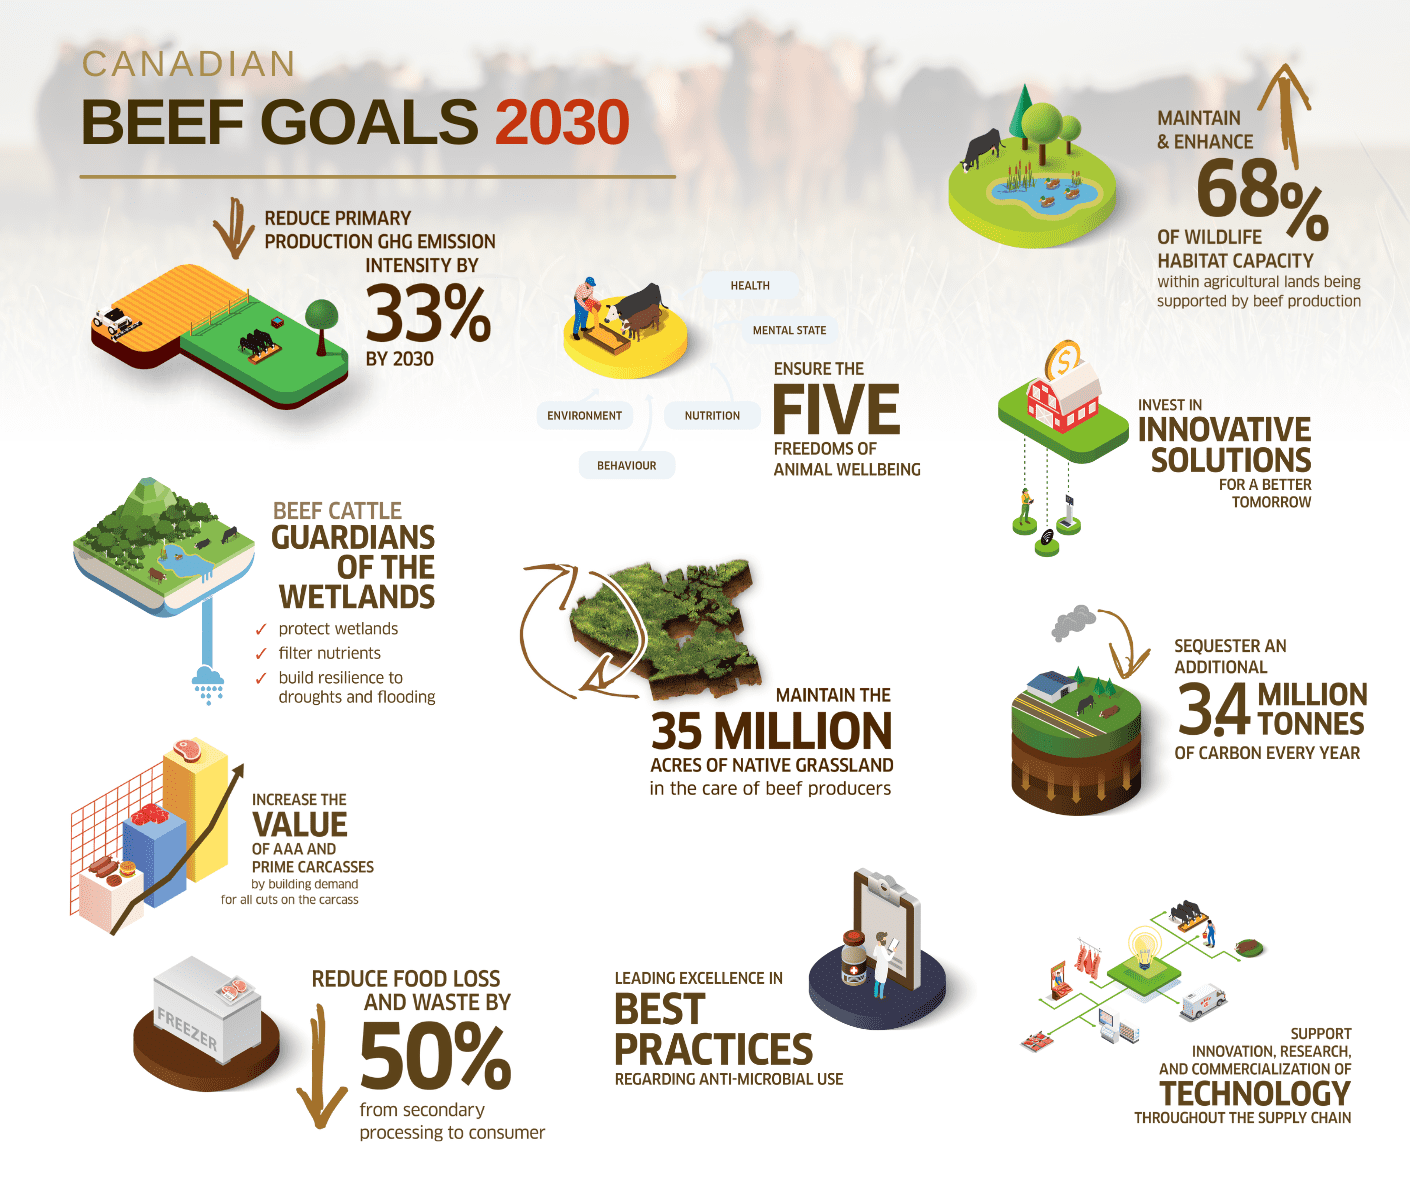 2030 Canadian Beef Goals